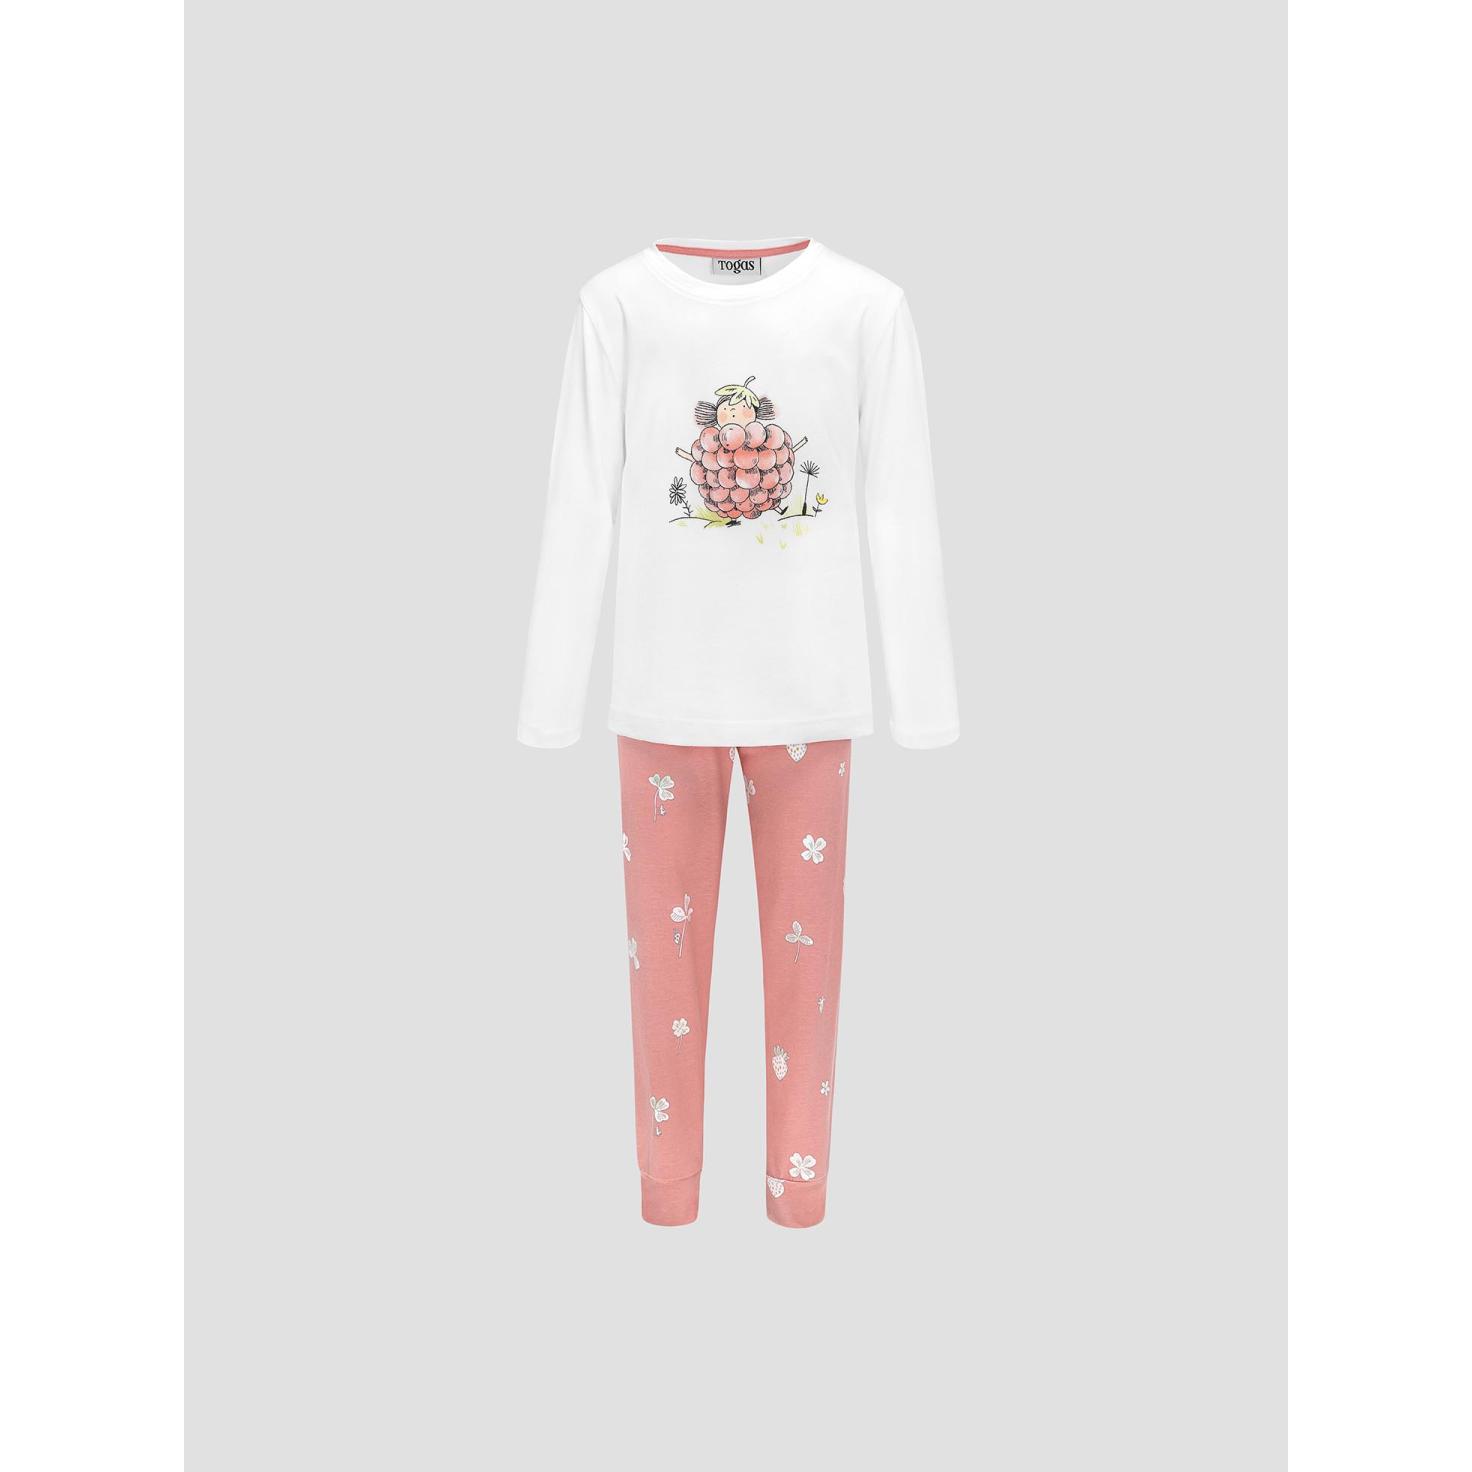 Пижама для девочек Kids by togas Стробби бело-розовый 140-146 см